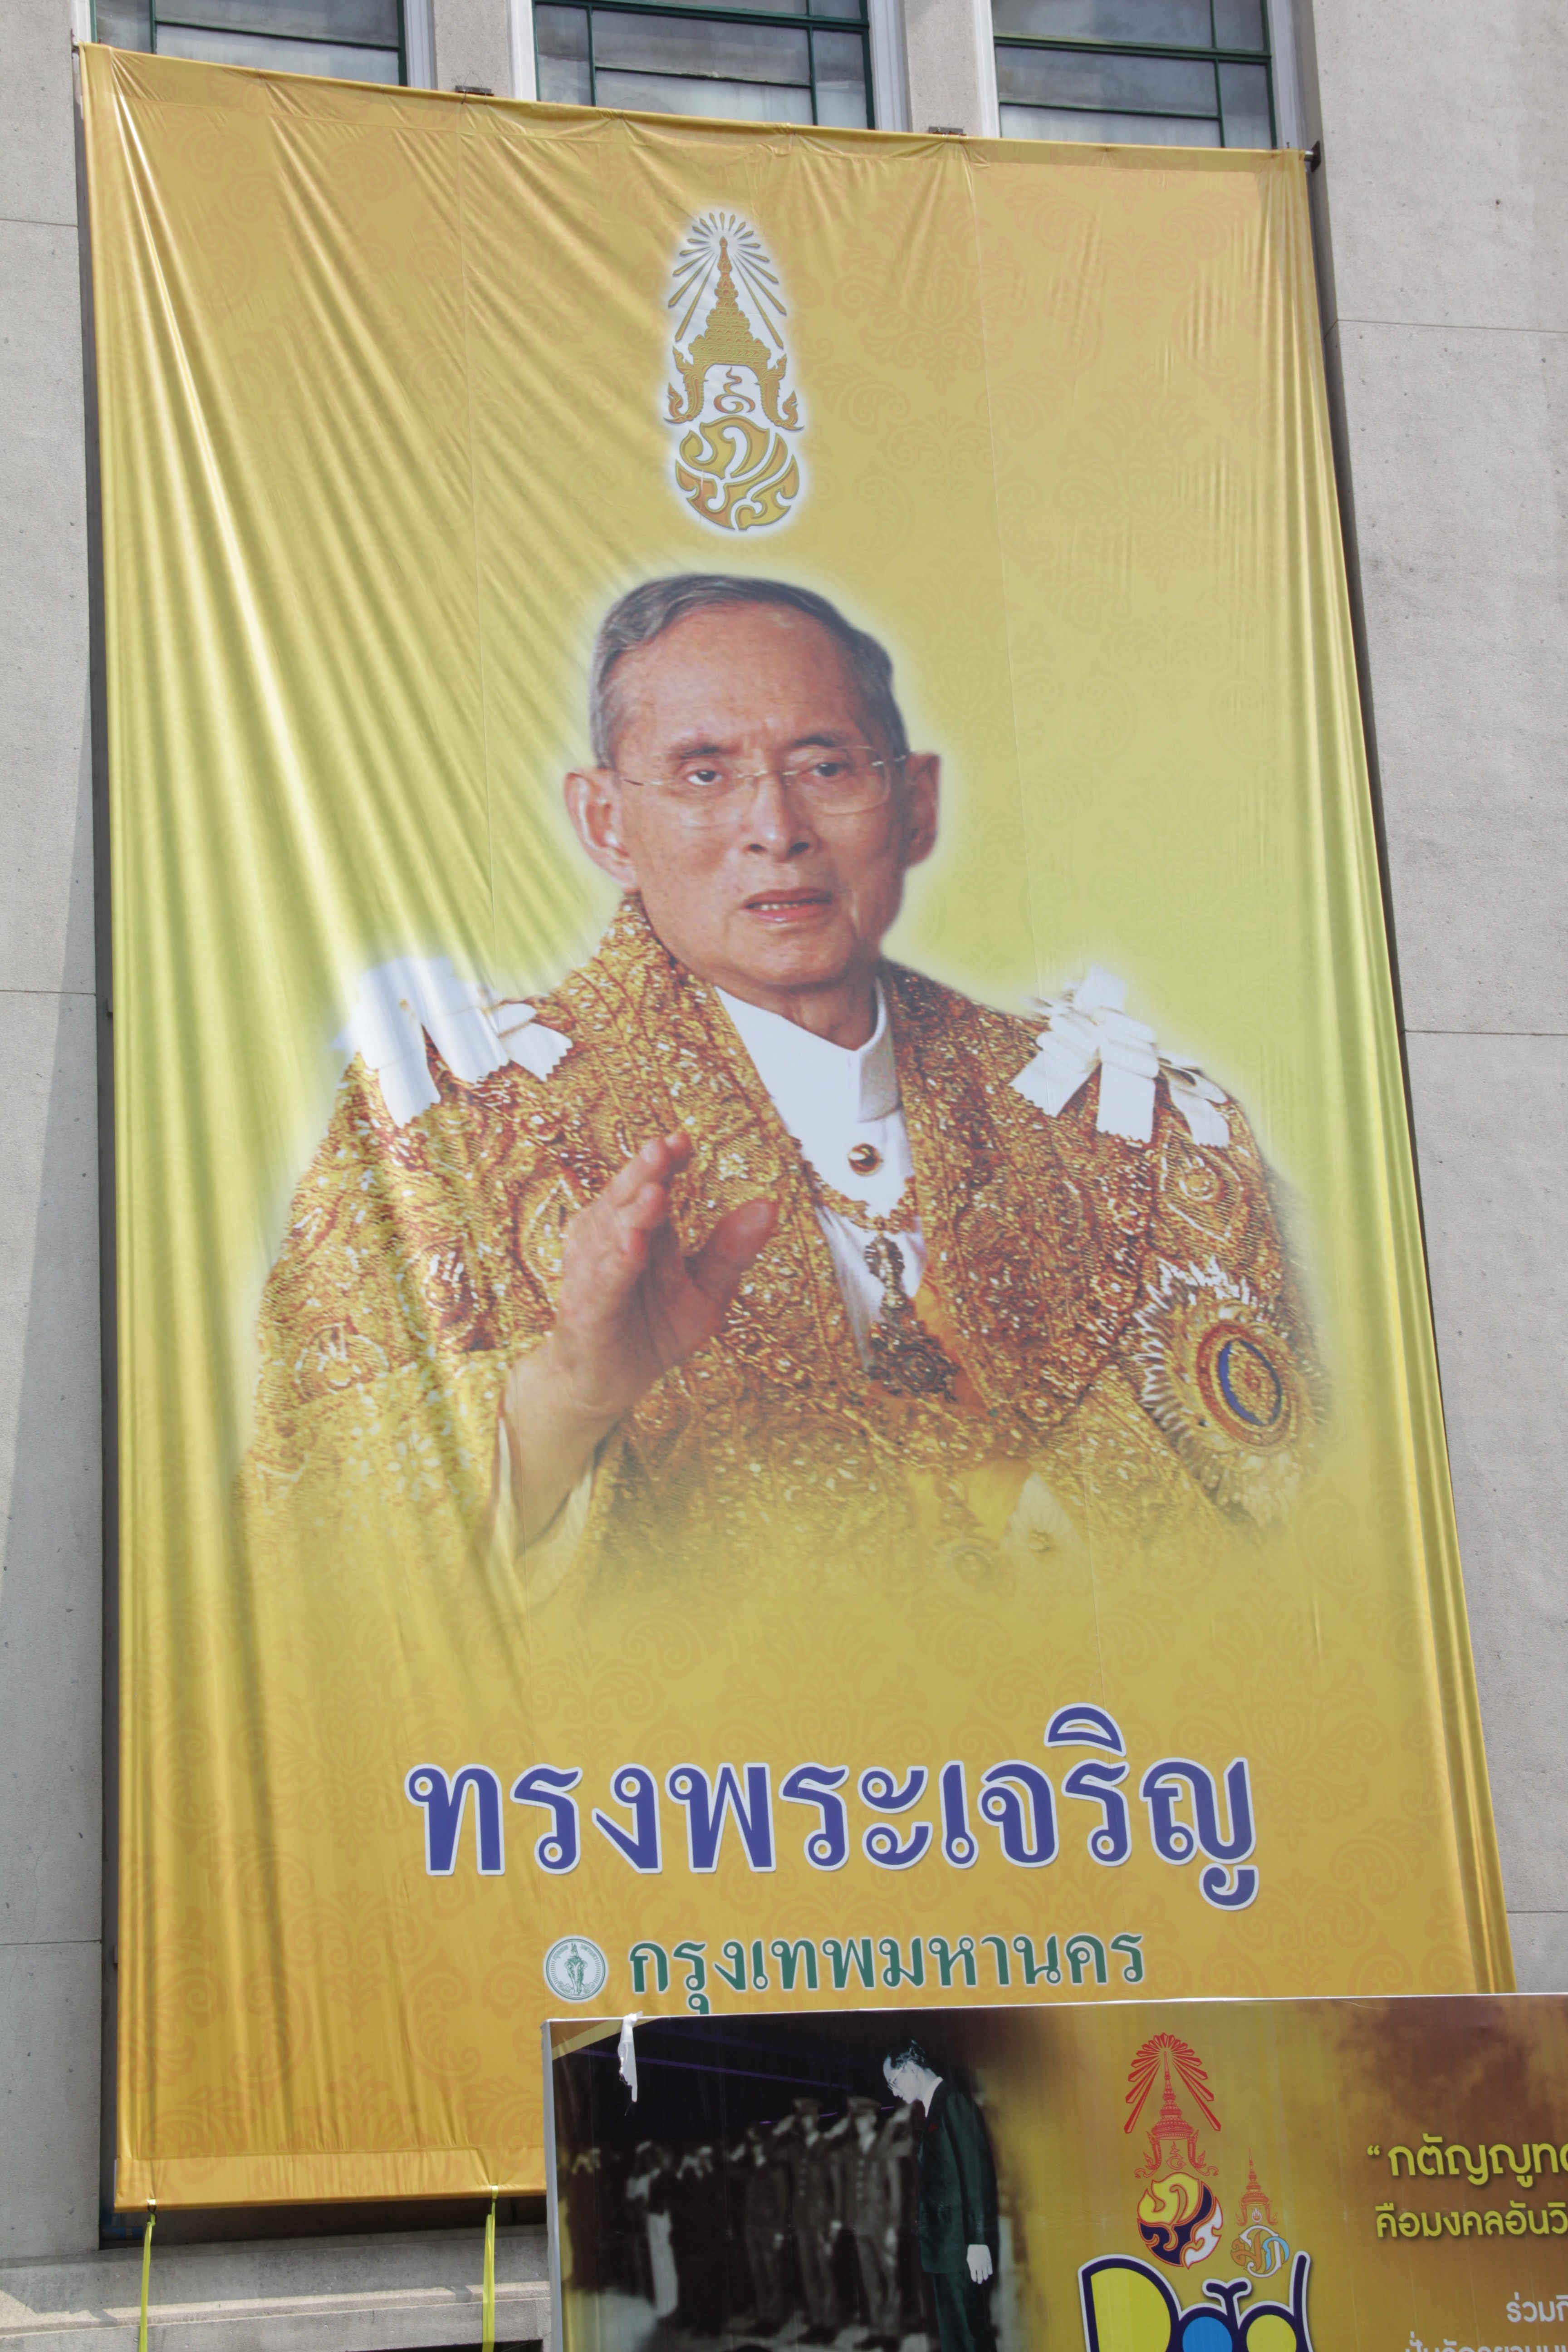 Bhumibol Adulyadej est le roi de la Thaïlande depuis 1946 ! Alan Bate, comme de nombreux Thaïlandais, l'admire beaucoup (© Jérôme Decoster).